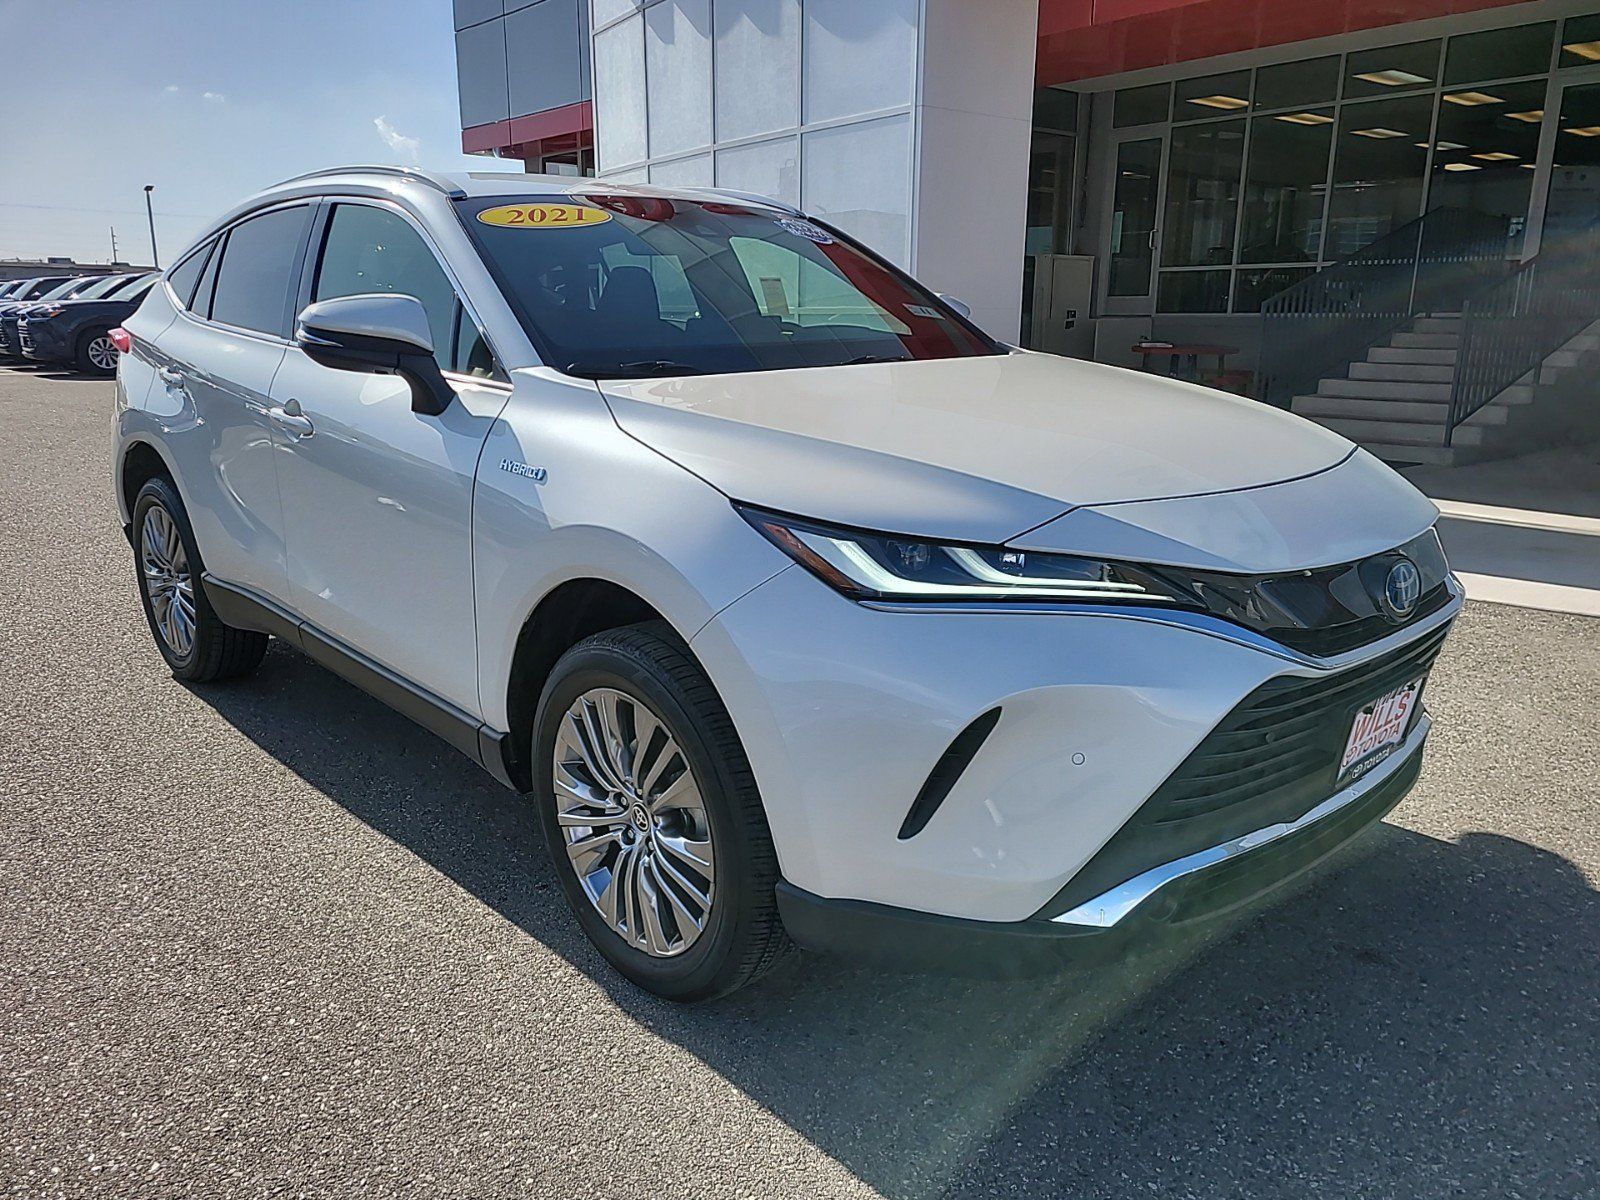 2021 - Toyota - Venza - $34,299